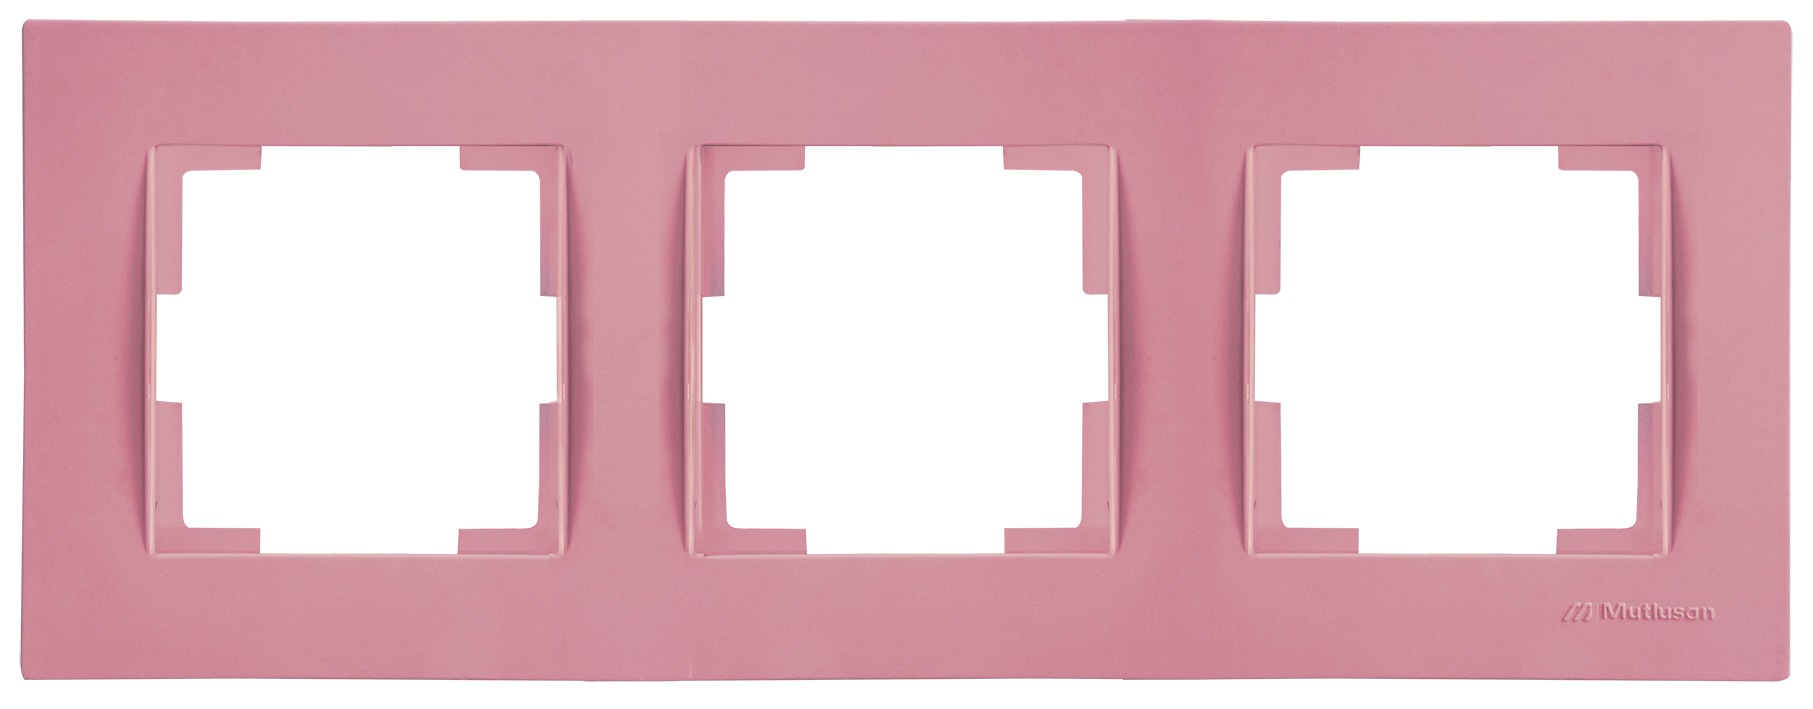 3 fach Rahmen horizontal Pink / Rosa (RITA Pastell Farben)